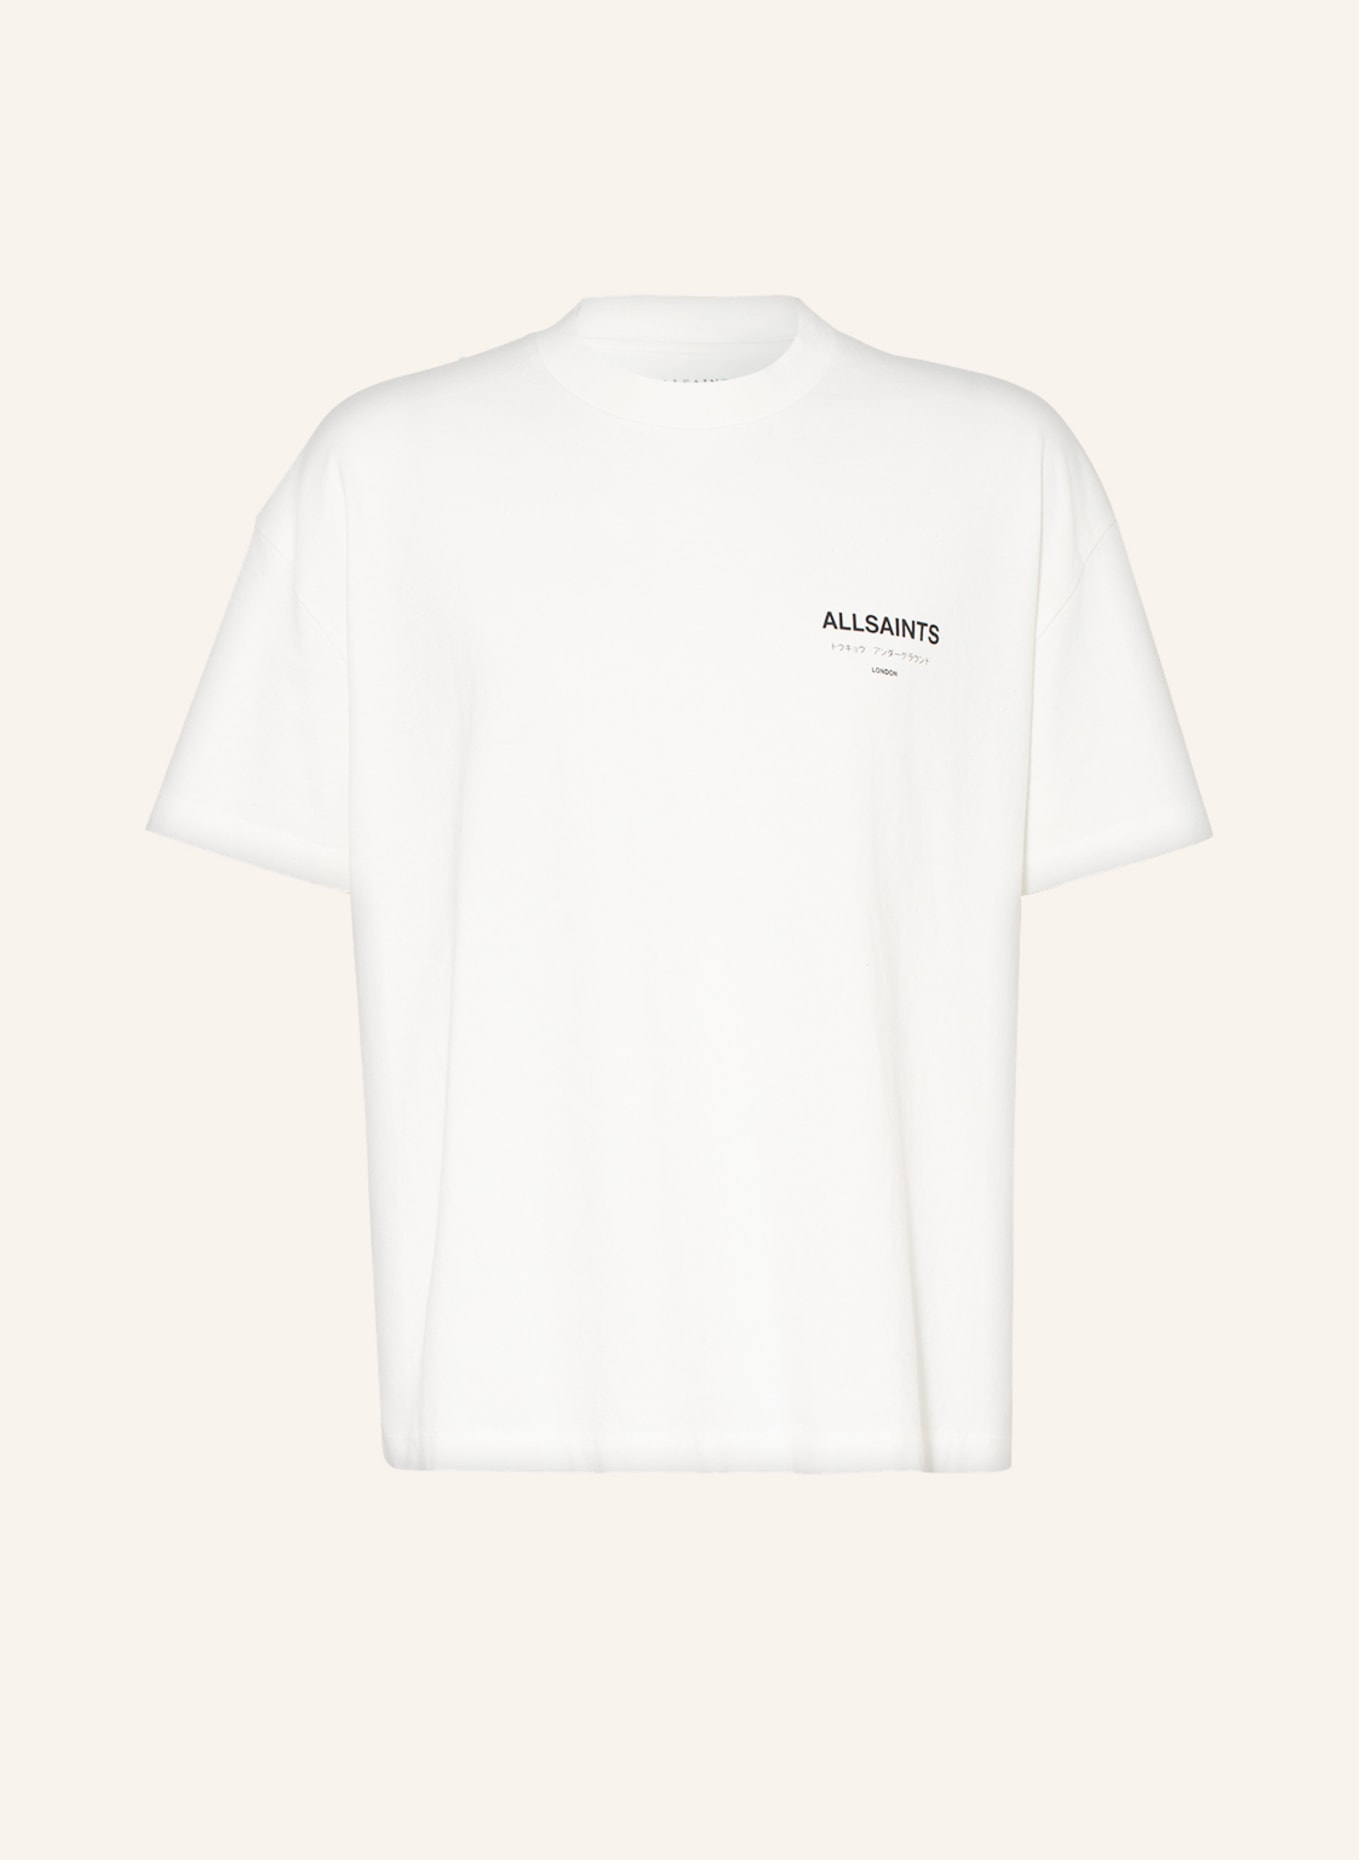 ALLSAINTS T-Shirt UNDERGROUND, Farbe: ECRU (Bild 1)